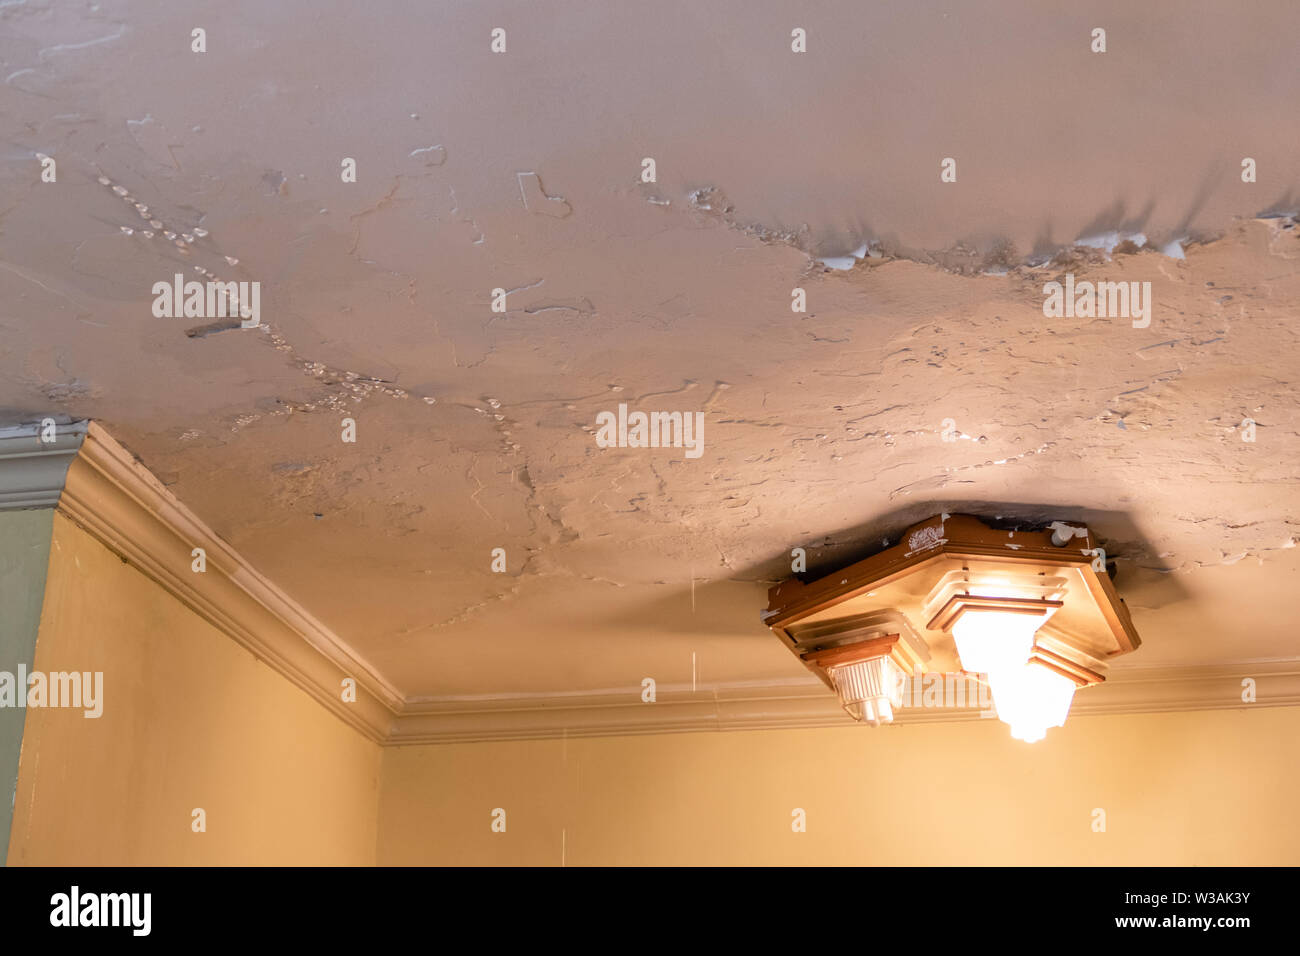 Wasser tropft von der Decke, Wasser damge Konzept Stockfotografie - Alamy